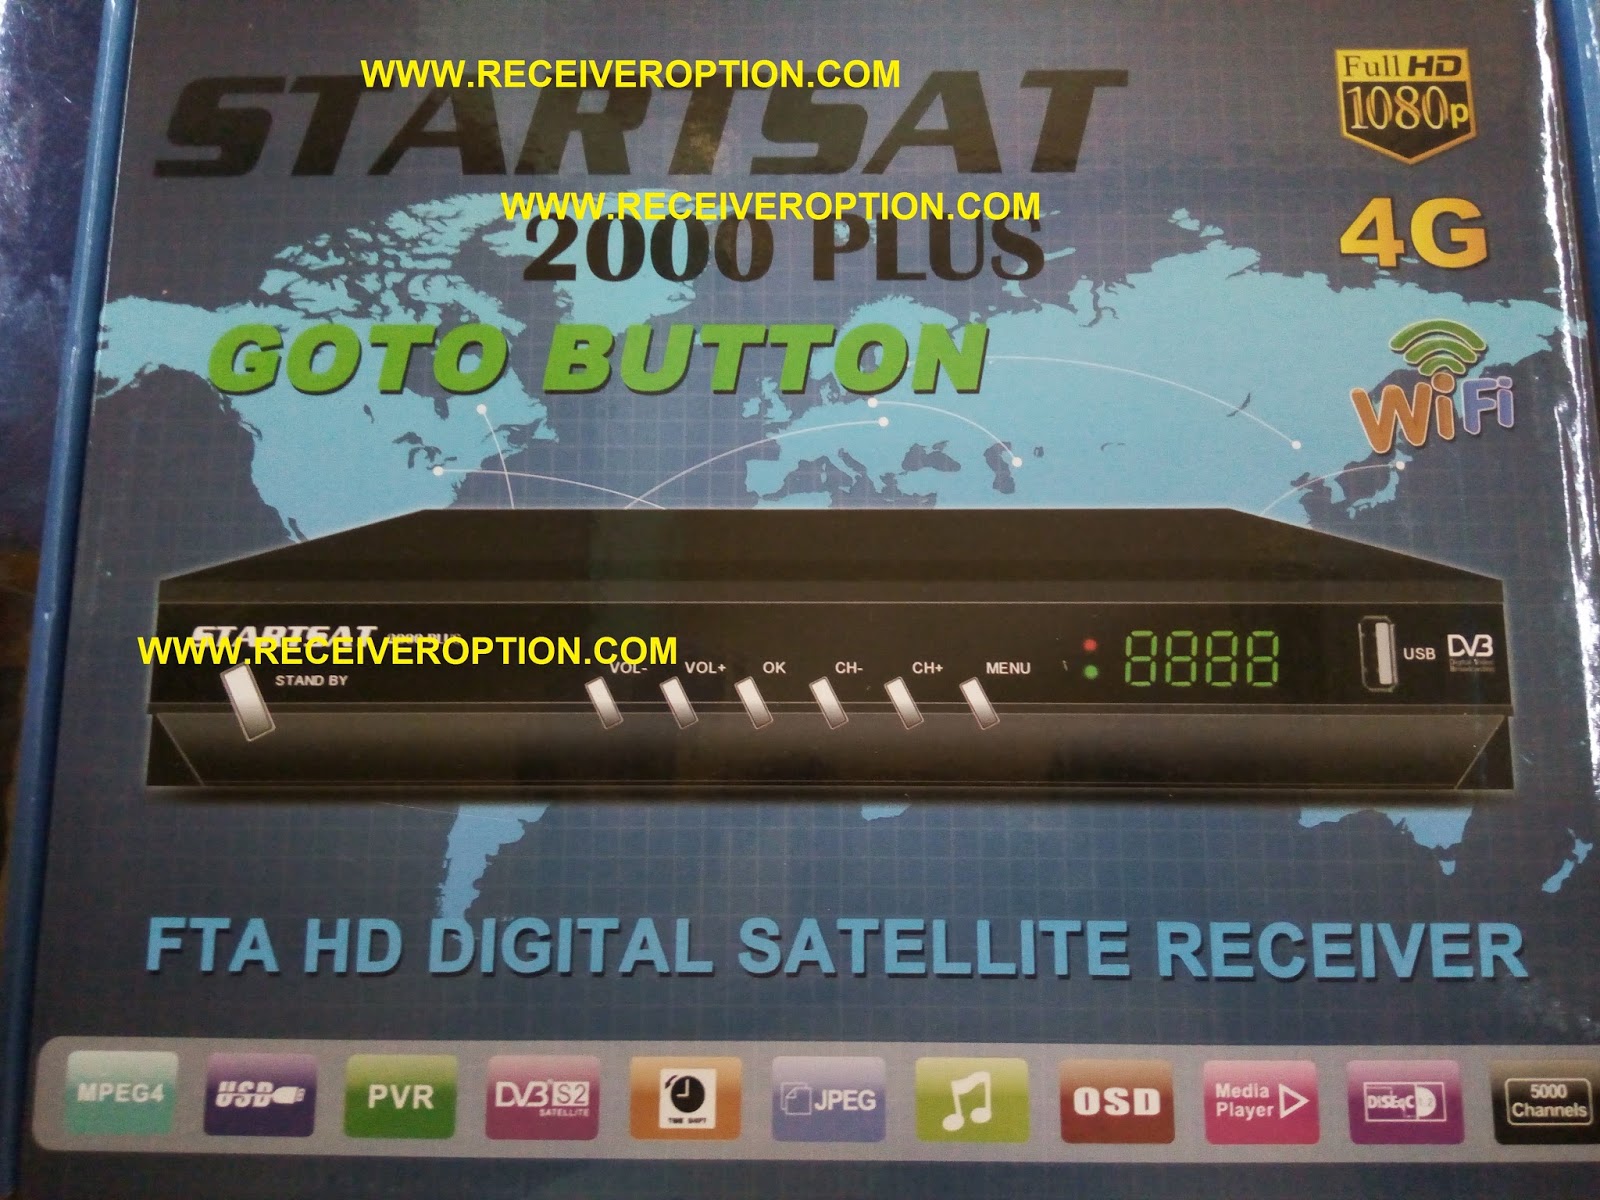 Starsat receiver software